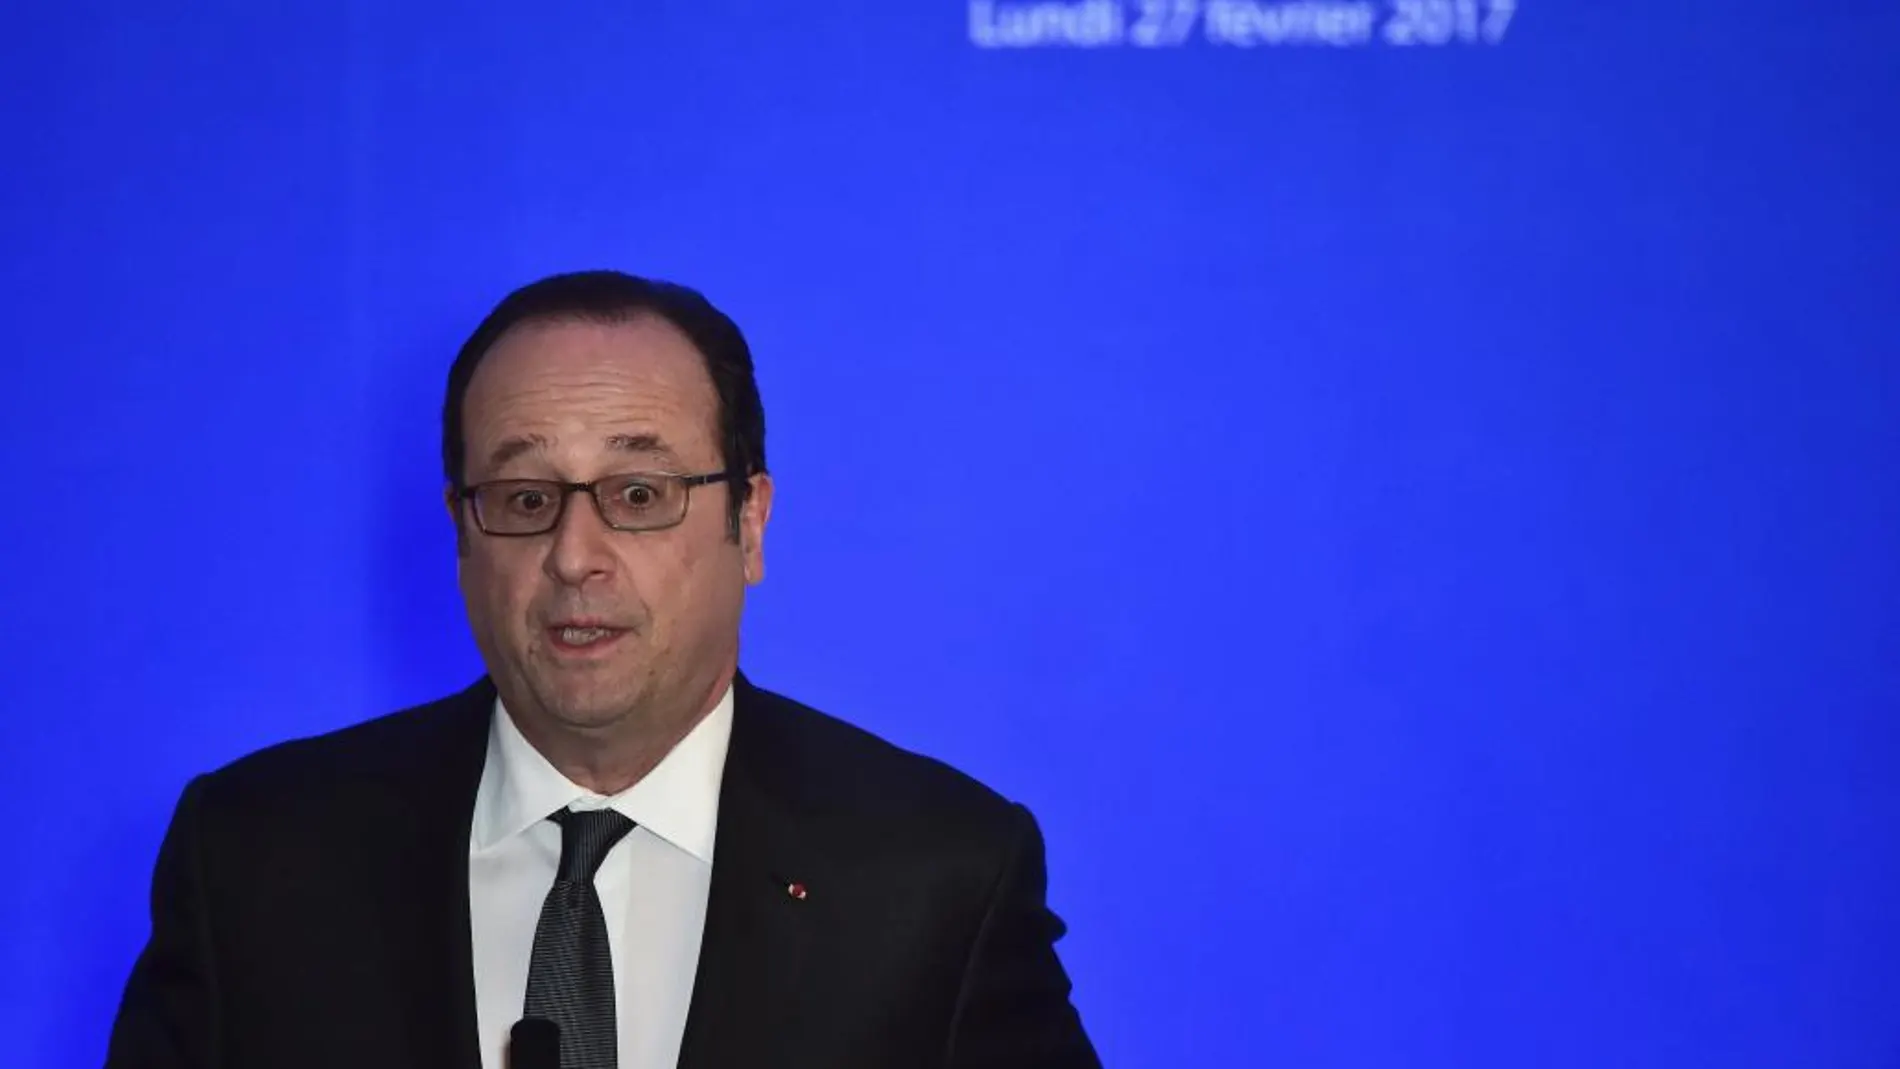 El presidente de Francia Francois Hollande pronuncia un discurso